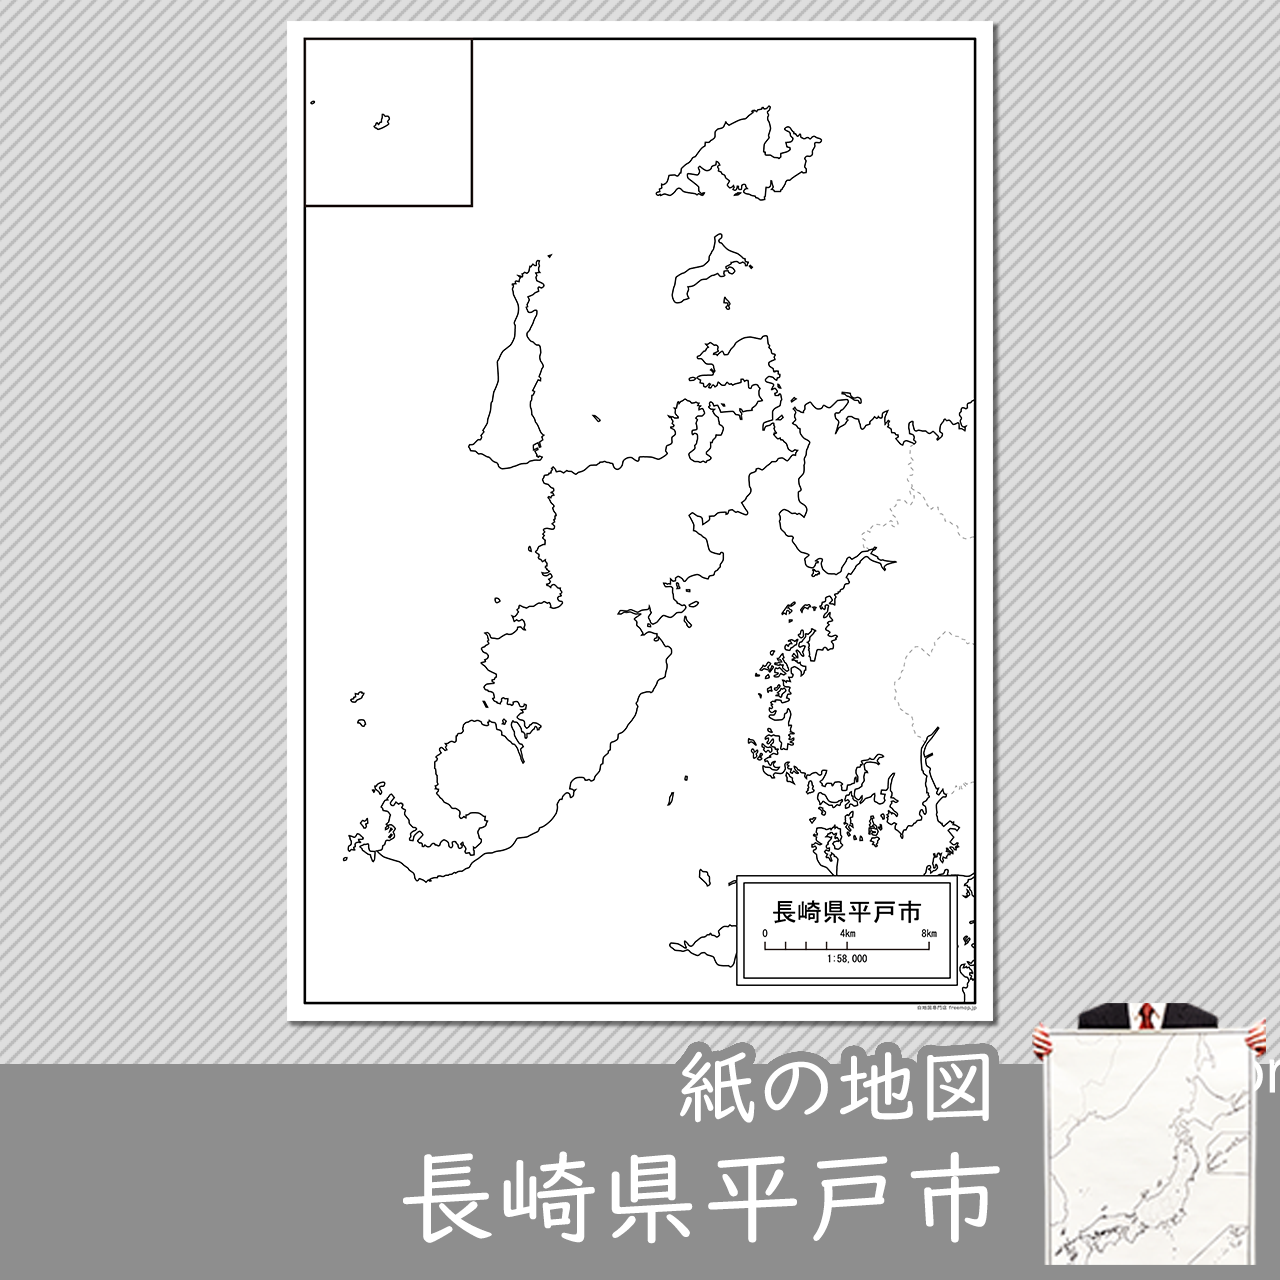 平戸市の紙の白地図のサムネイル